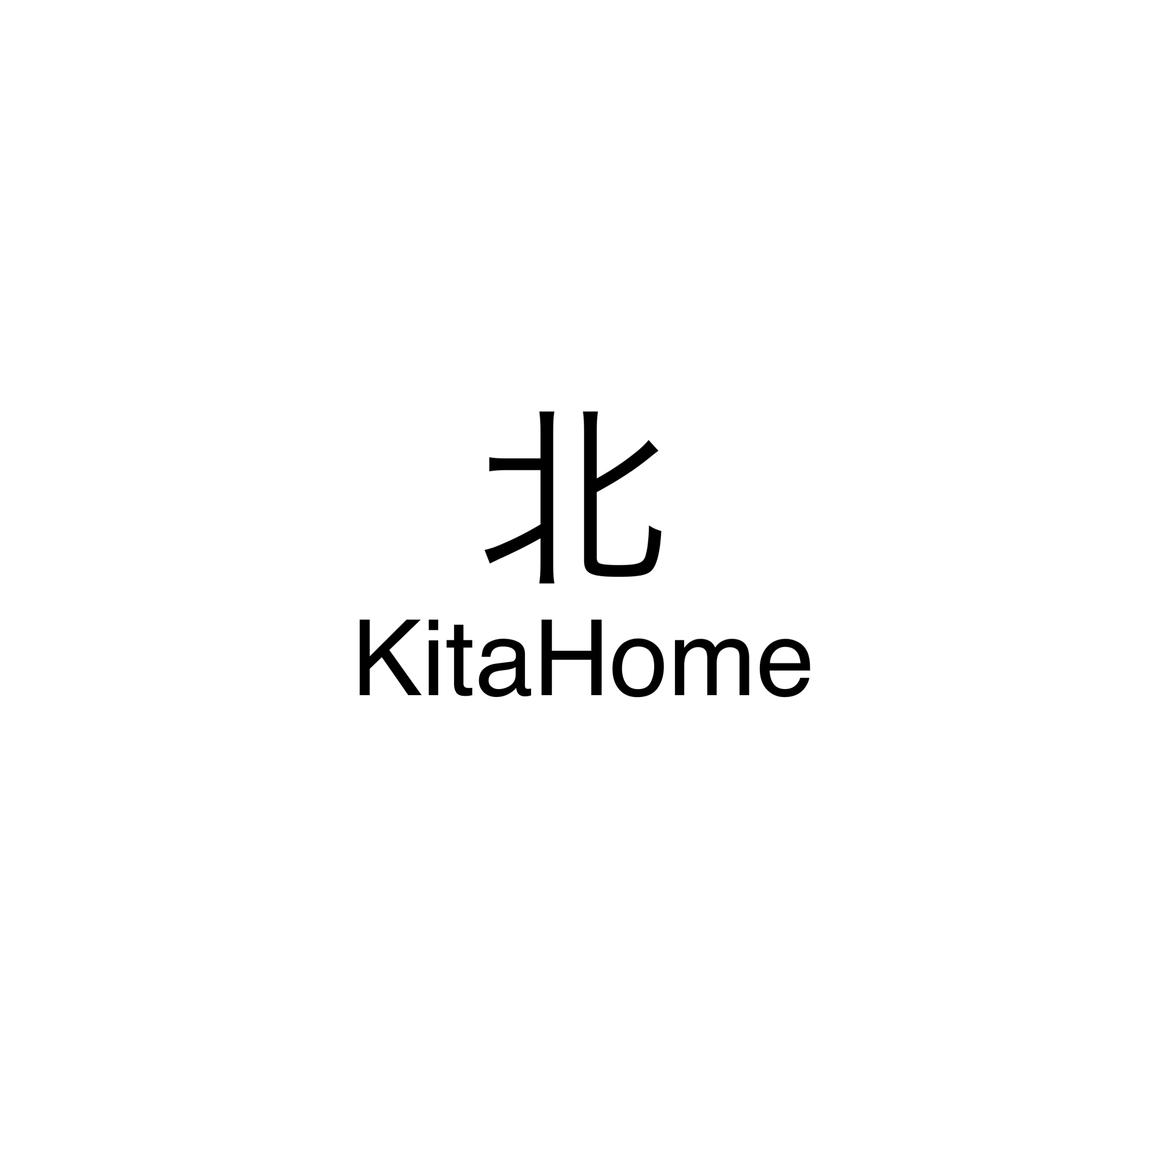 KitaHome